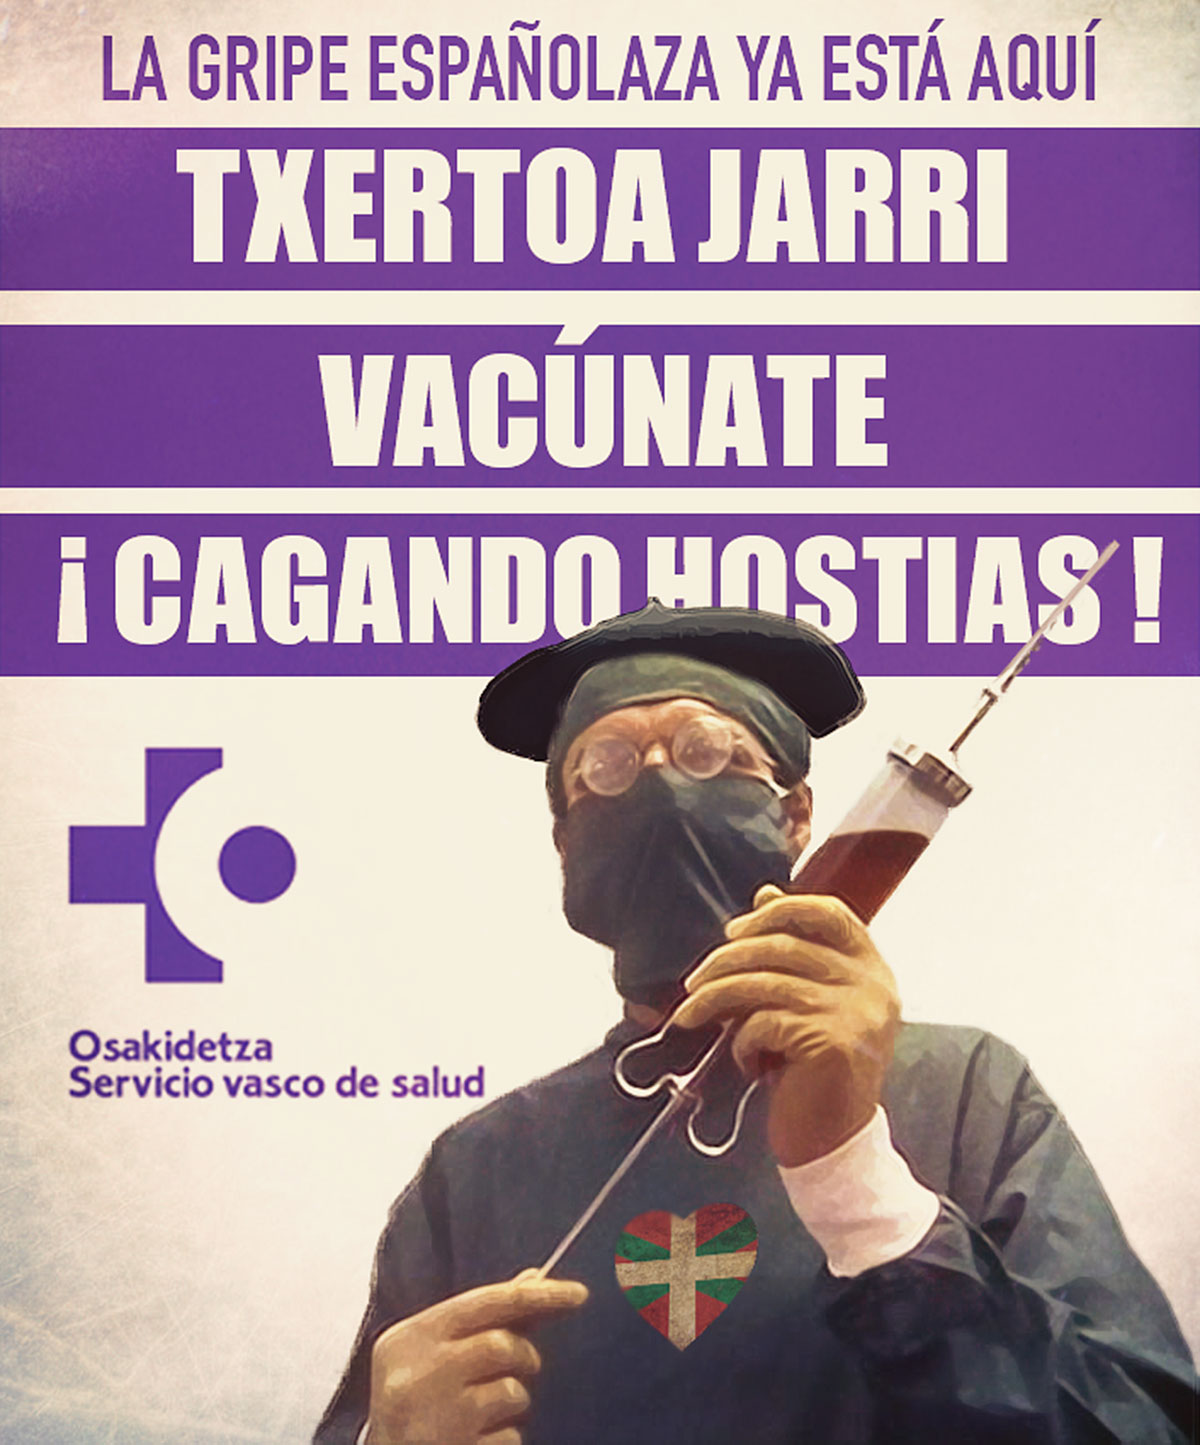 Cartel de la campaña de vacunación contra la gripe española